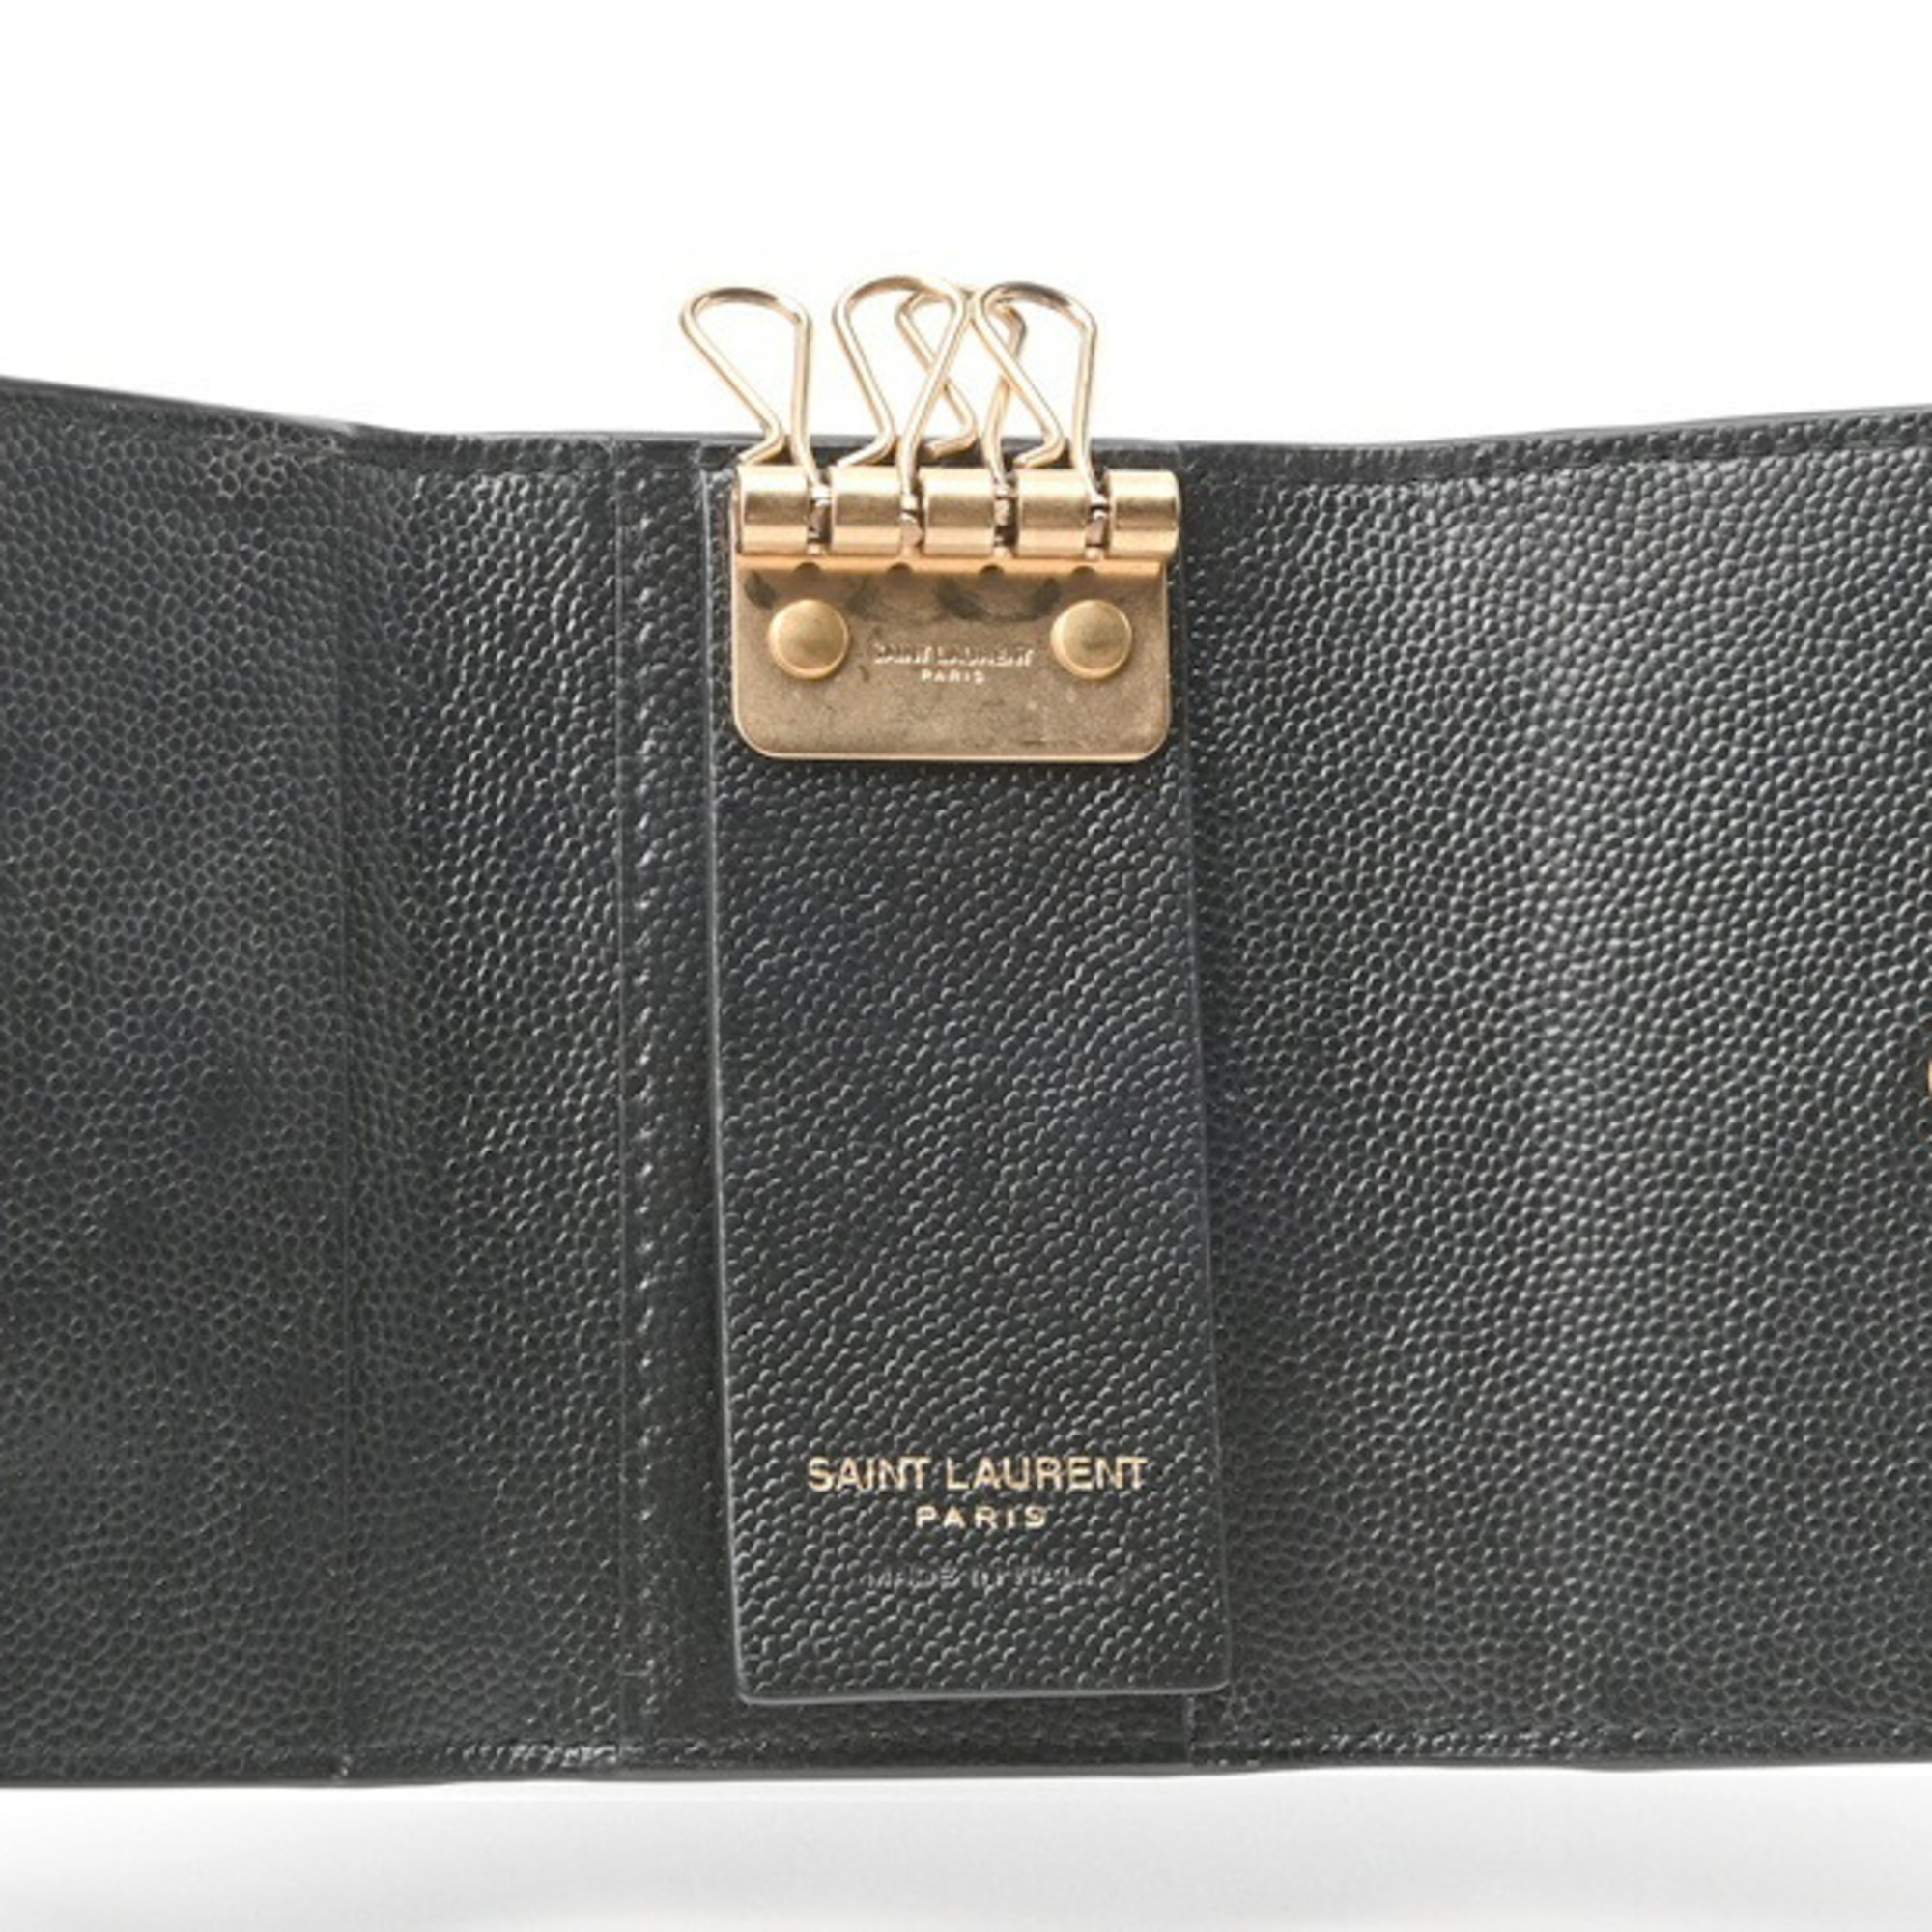 Saint Laurent Monogram Key Case 698236 Grain de Poudre Embossed Leather T-155144